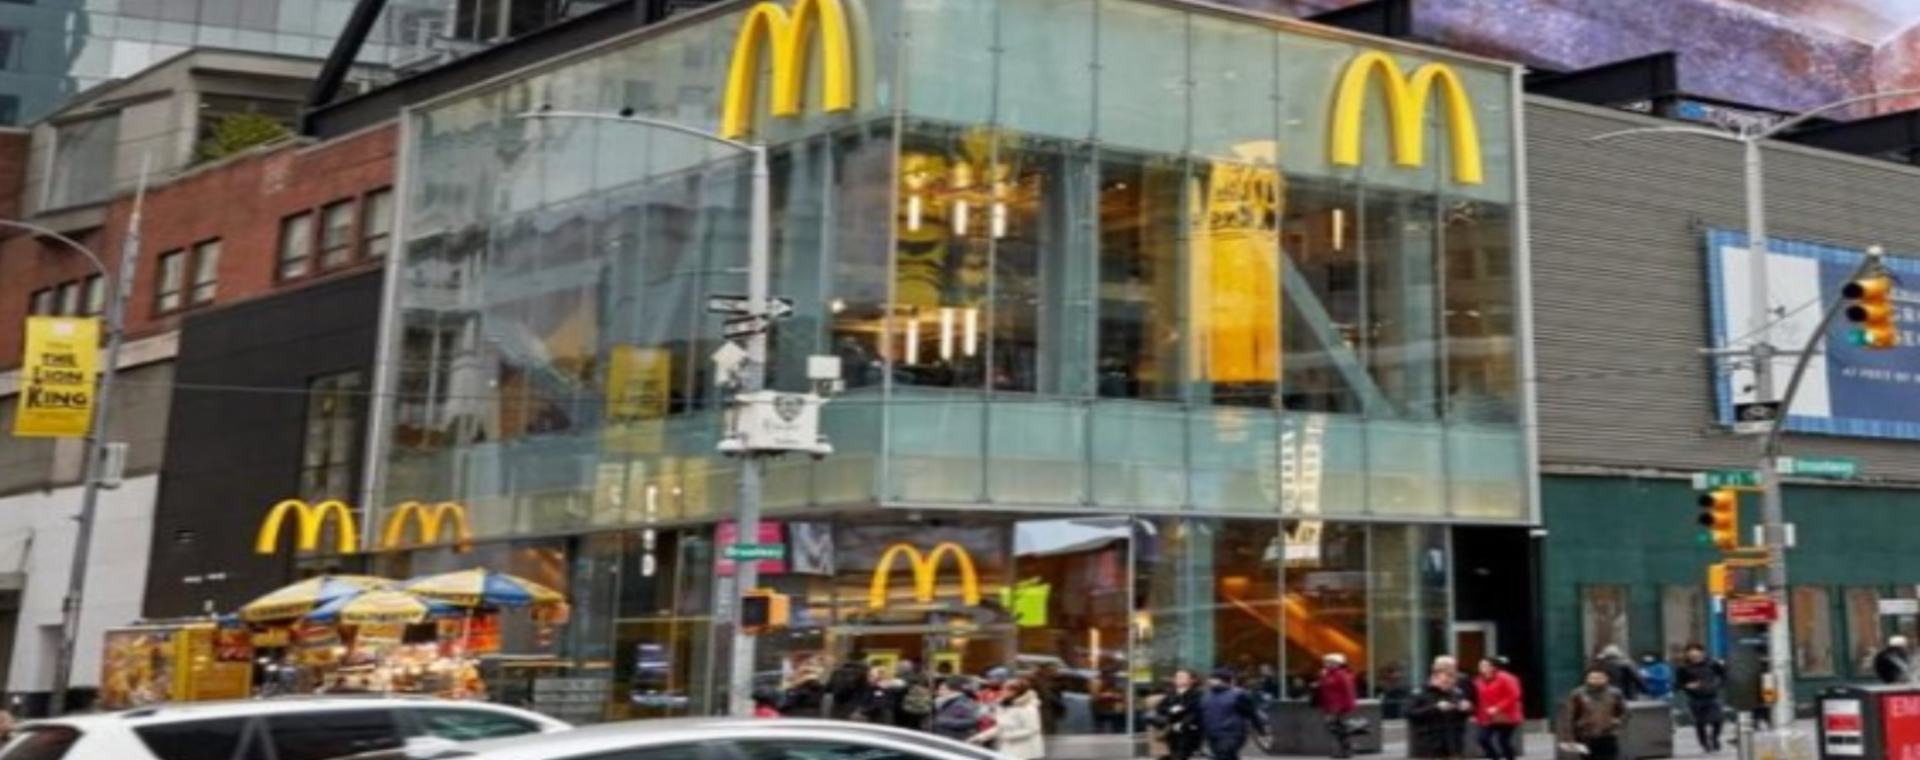 Perusahaan waralaba Amerika Serikat (AS) McDonald’s menutup semua restoran dan menghentikan sementara semua operasi di Rusia. Keputusan ini menyusul invasi Rusia atas Ukraina yang sudah berlangsung dua pekan./mcdonalds.com